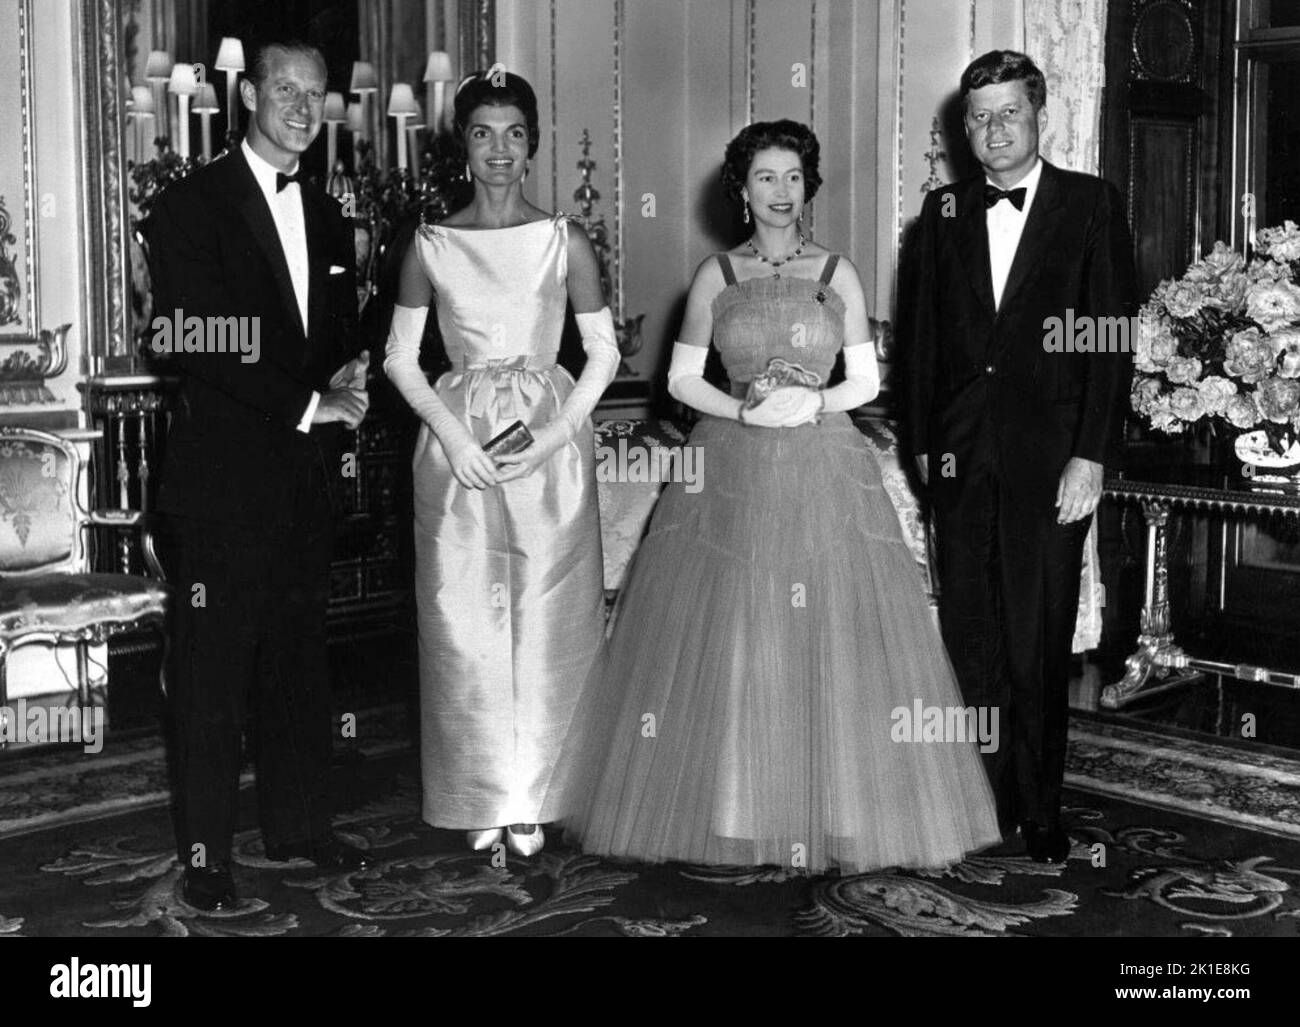 Portrait de groupe avec (de gauche à droite) le prince Philip, le duc d'Édimbourg, Jacqueline Kennedy, la reine Elizabeth II et le président américain John F. Kennedy au palais de Buckingham sur 5 juin 1961. Banque D'Images